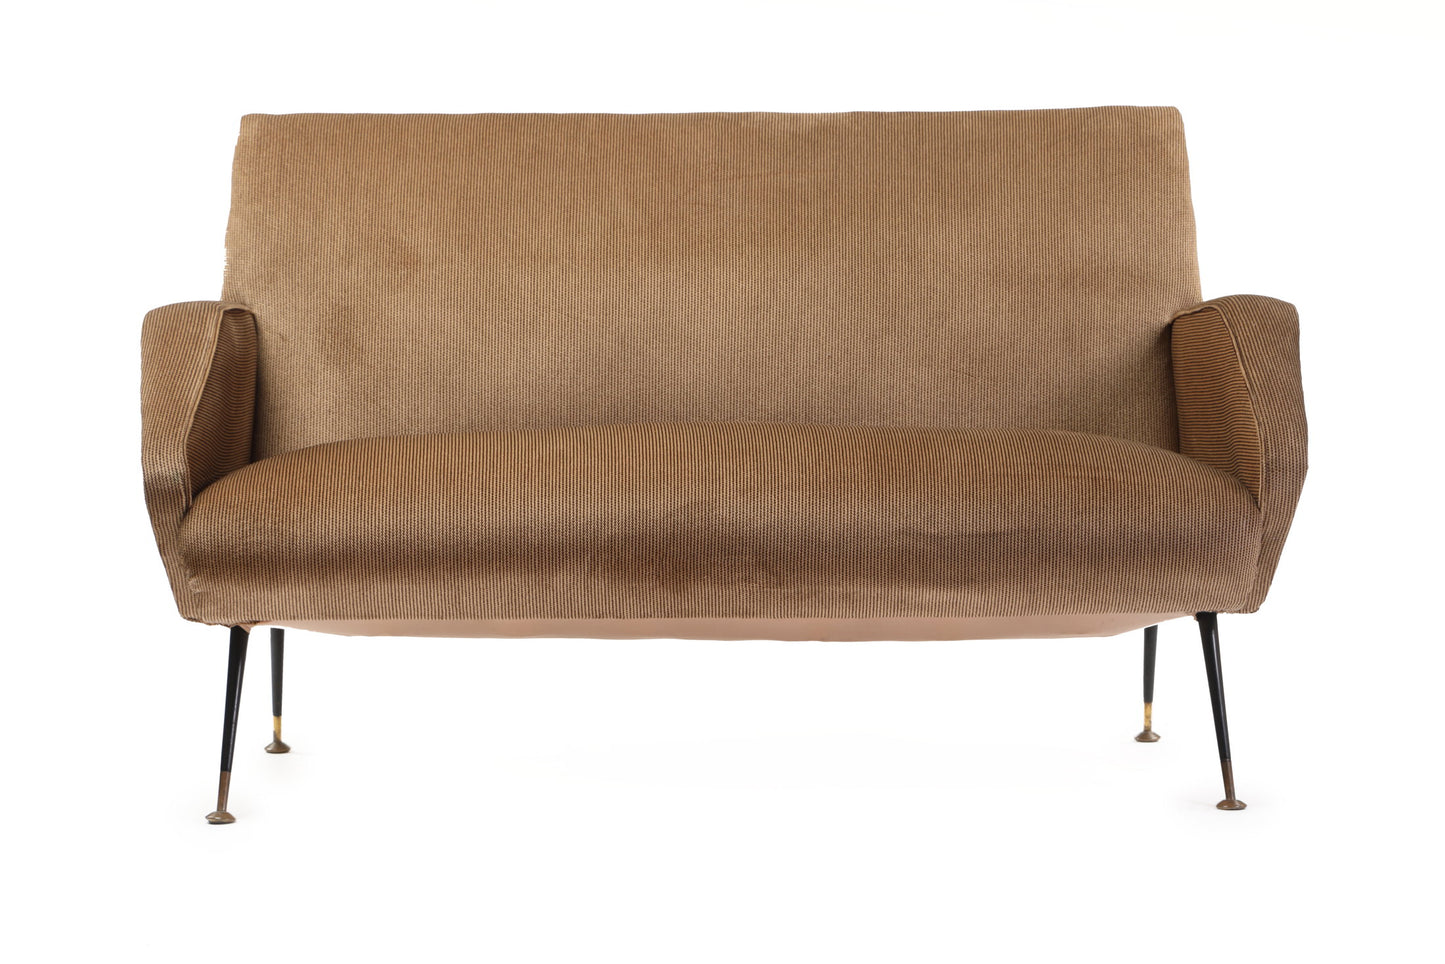 Mud velvet sofa from the 50s